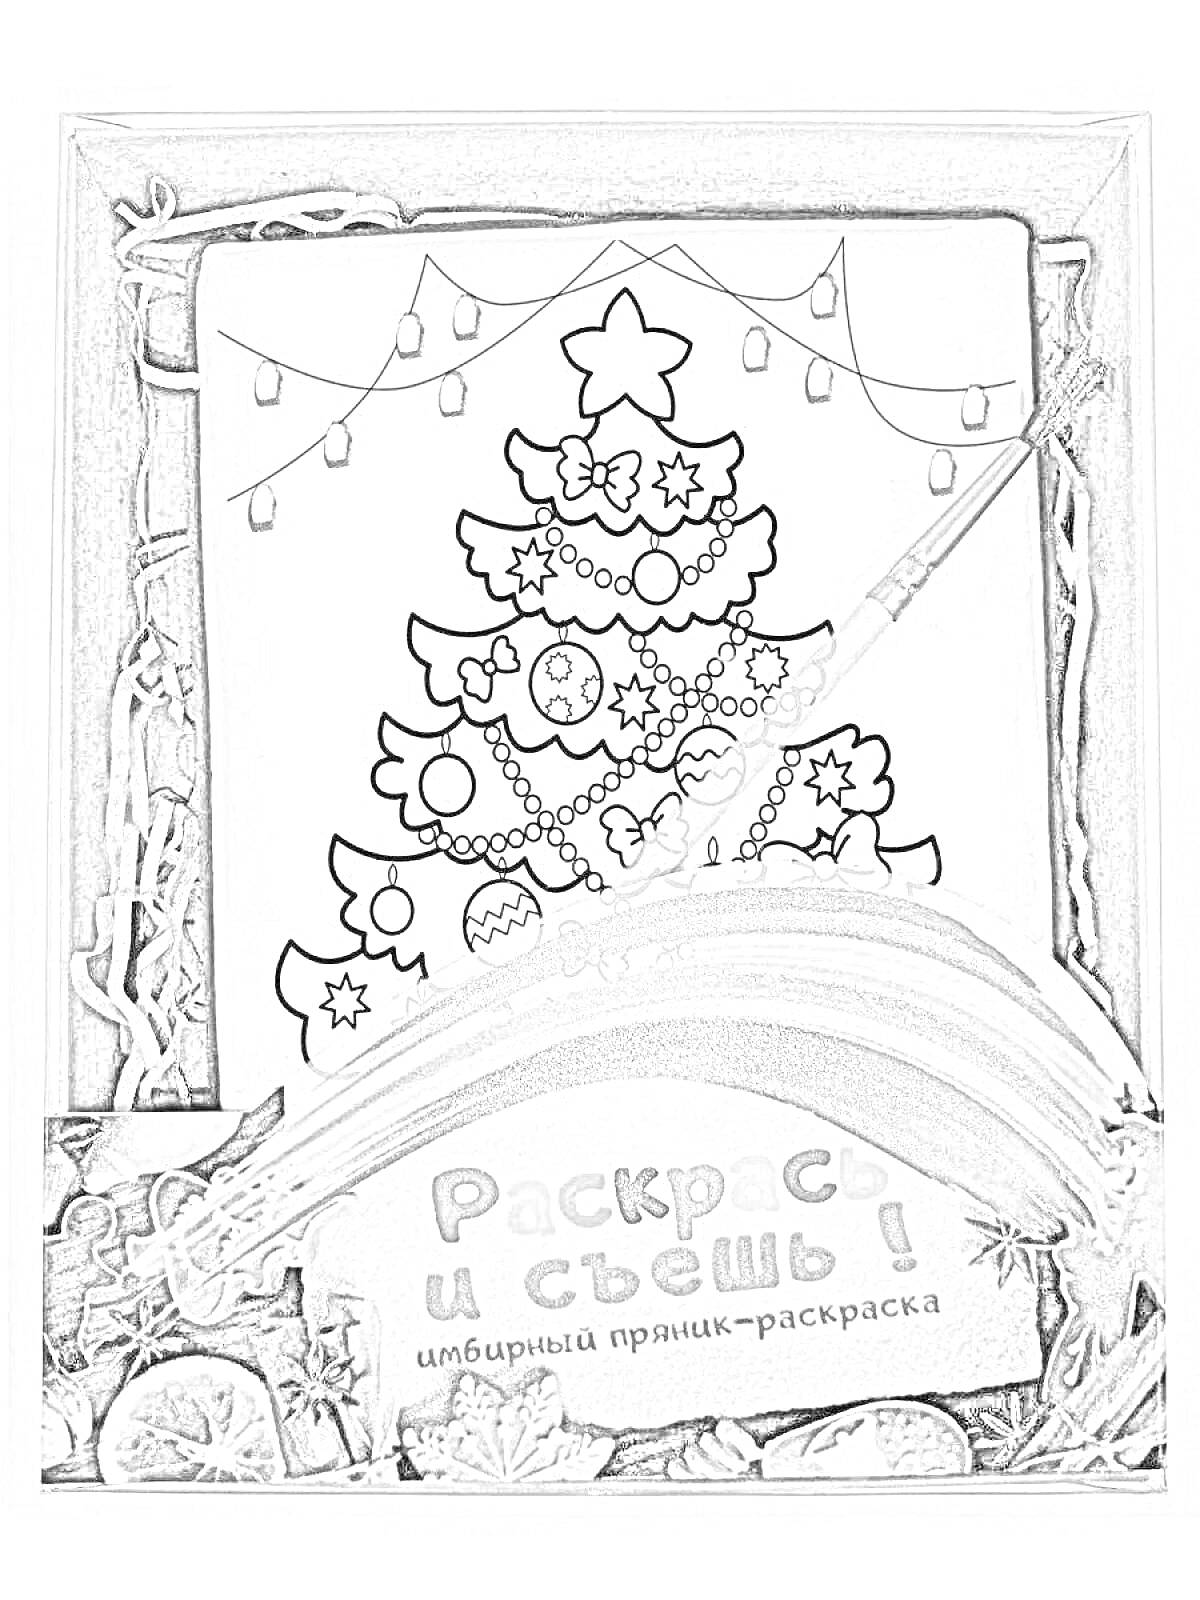 Раскраска Раскрась и съешь! Имбирный пряник-раскраска с рисунком новогодней елки, красками и кисточкой в подарочной упаковке